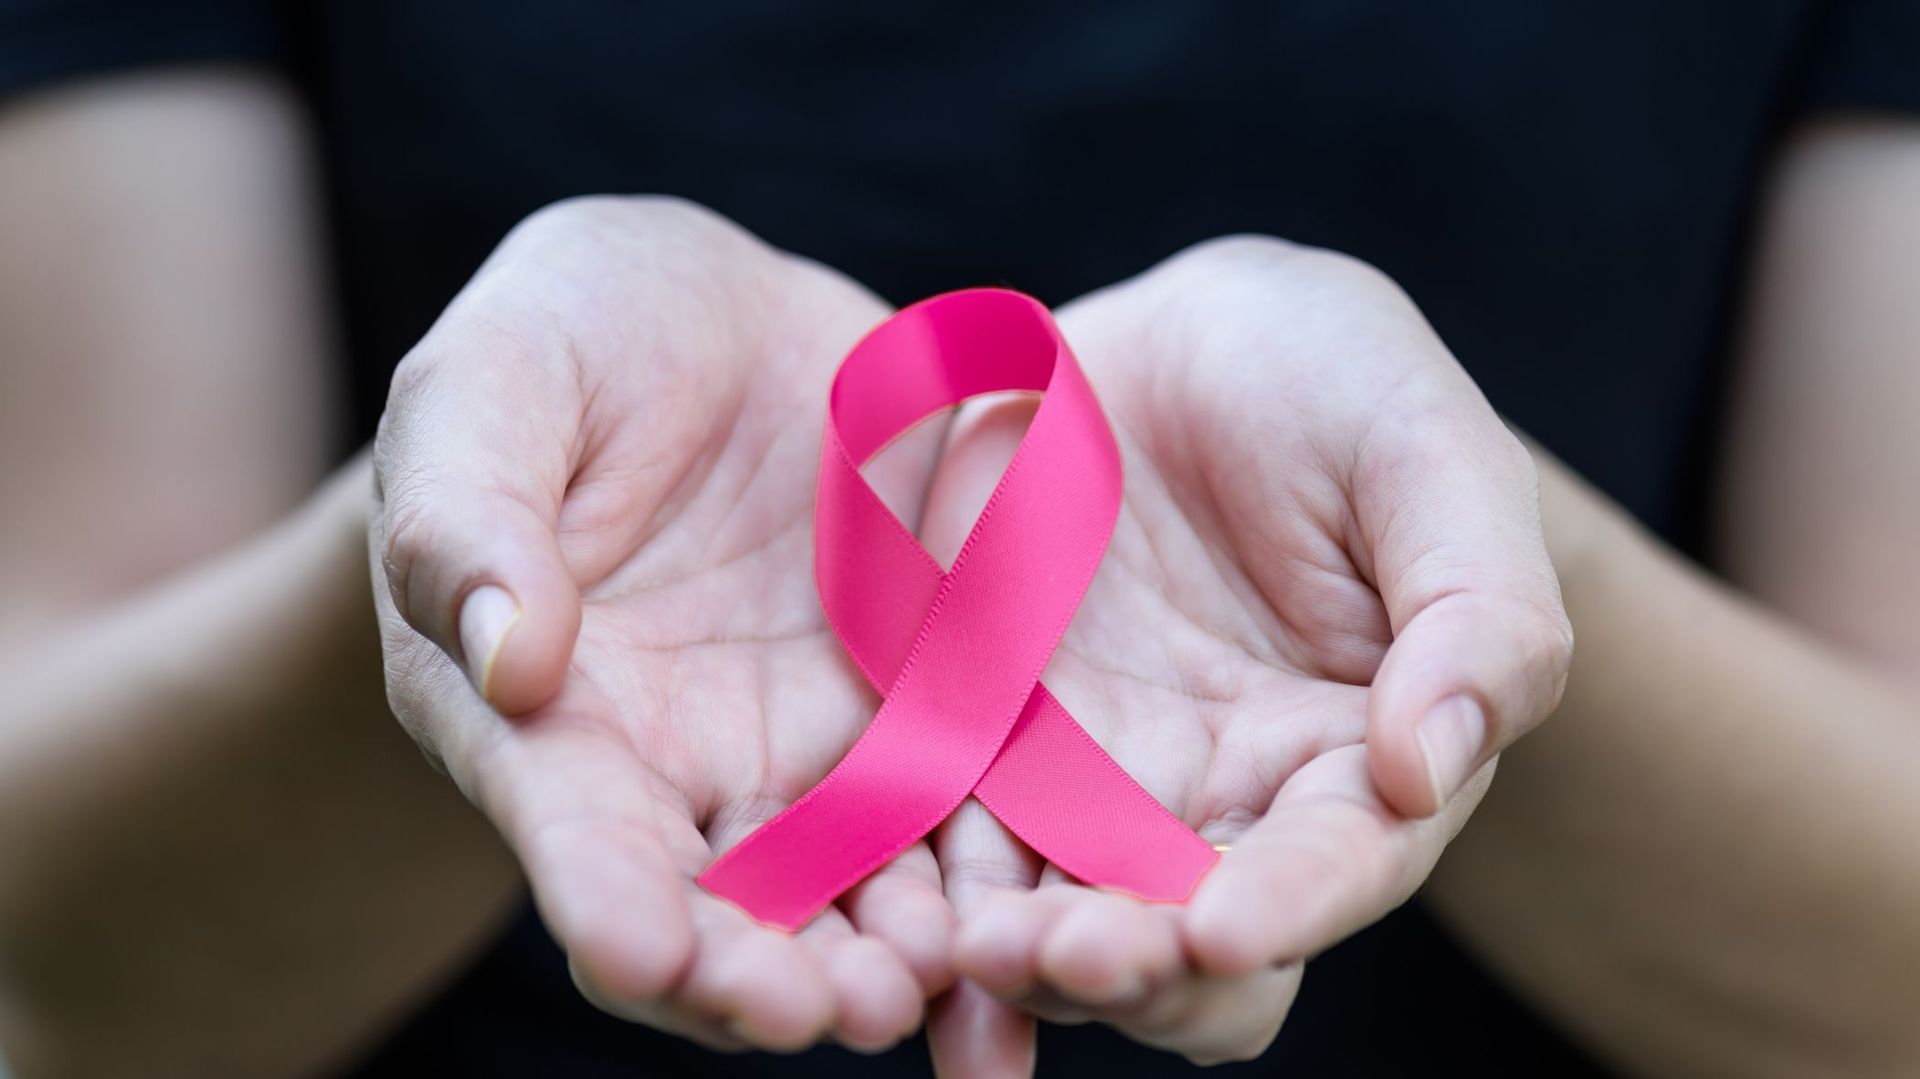 Surpoids : après 50 ans, les femmes qui perdent des kilos abaissent leur risque de cancer du sein